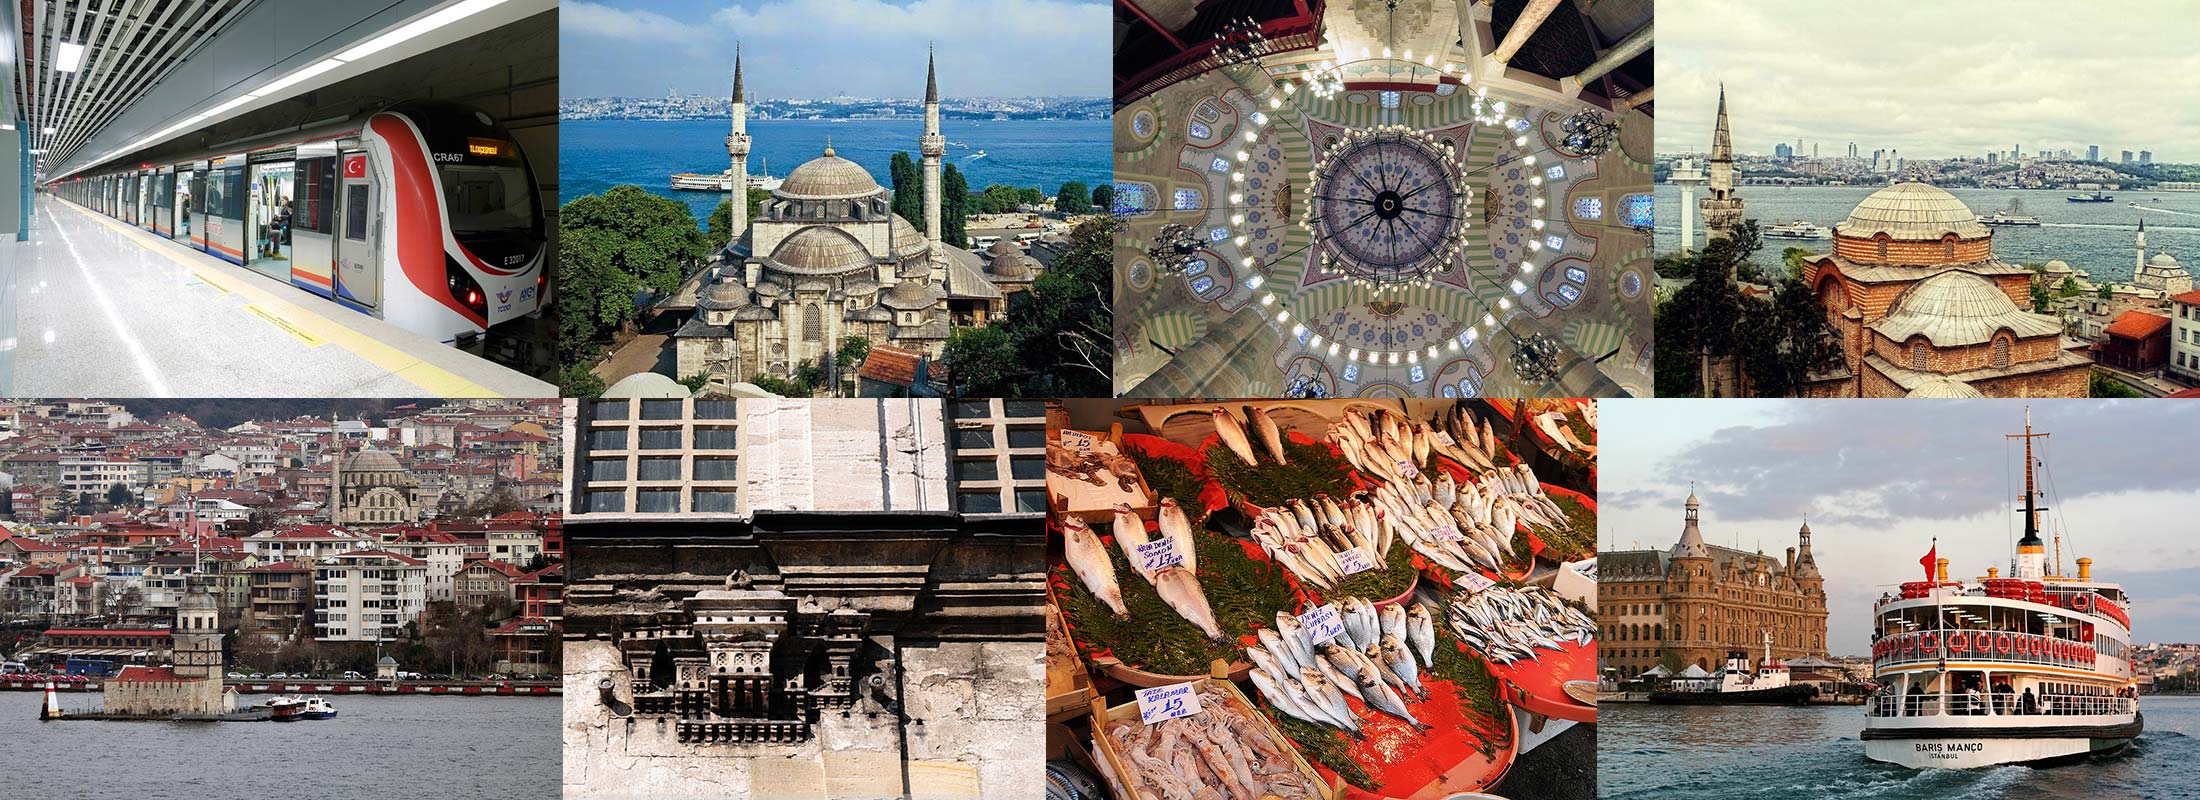 full-day-asian-side-istanbul-tour-uskudar-kadikoy-walking-tour